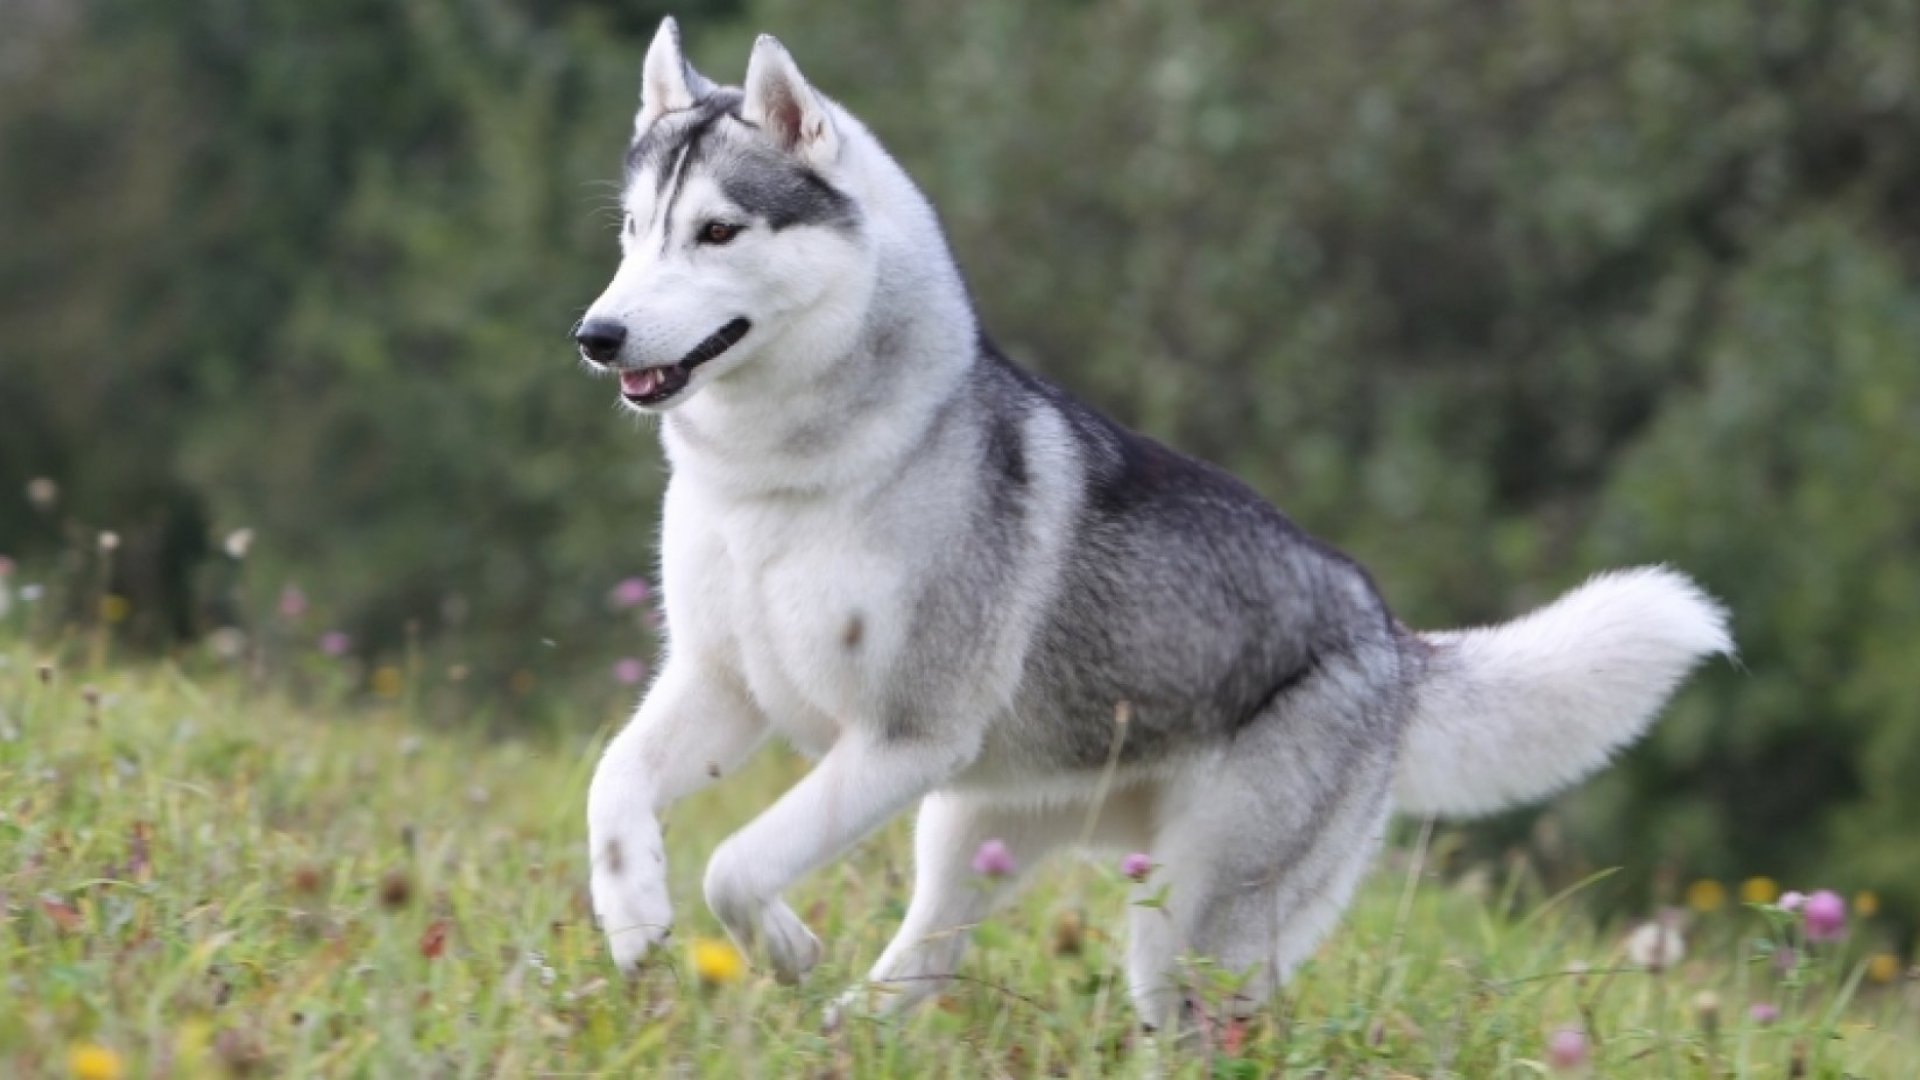 Husky ခွေးများအတွက်ပြင်ပအပူချိန်၏အန္တရာယ်များ၊ သင်သိရန်လိုအပ်သမျှ - Fumi အိမ်မွေးတိရစ္ဆာန်များ